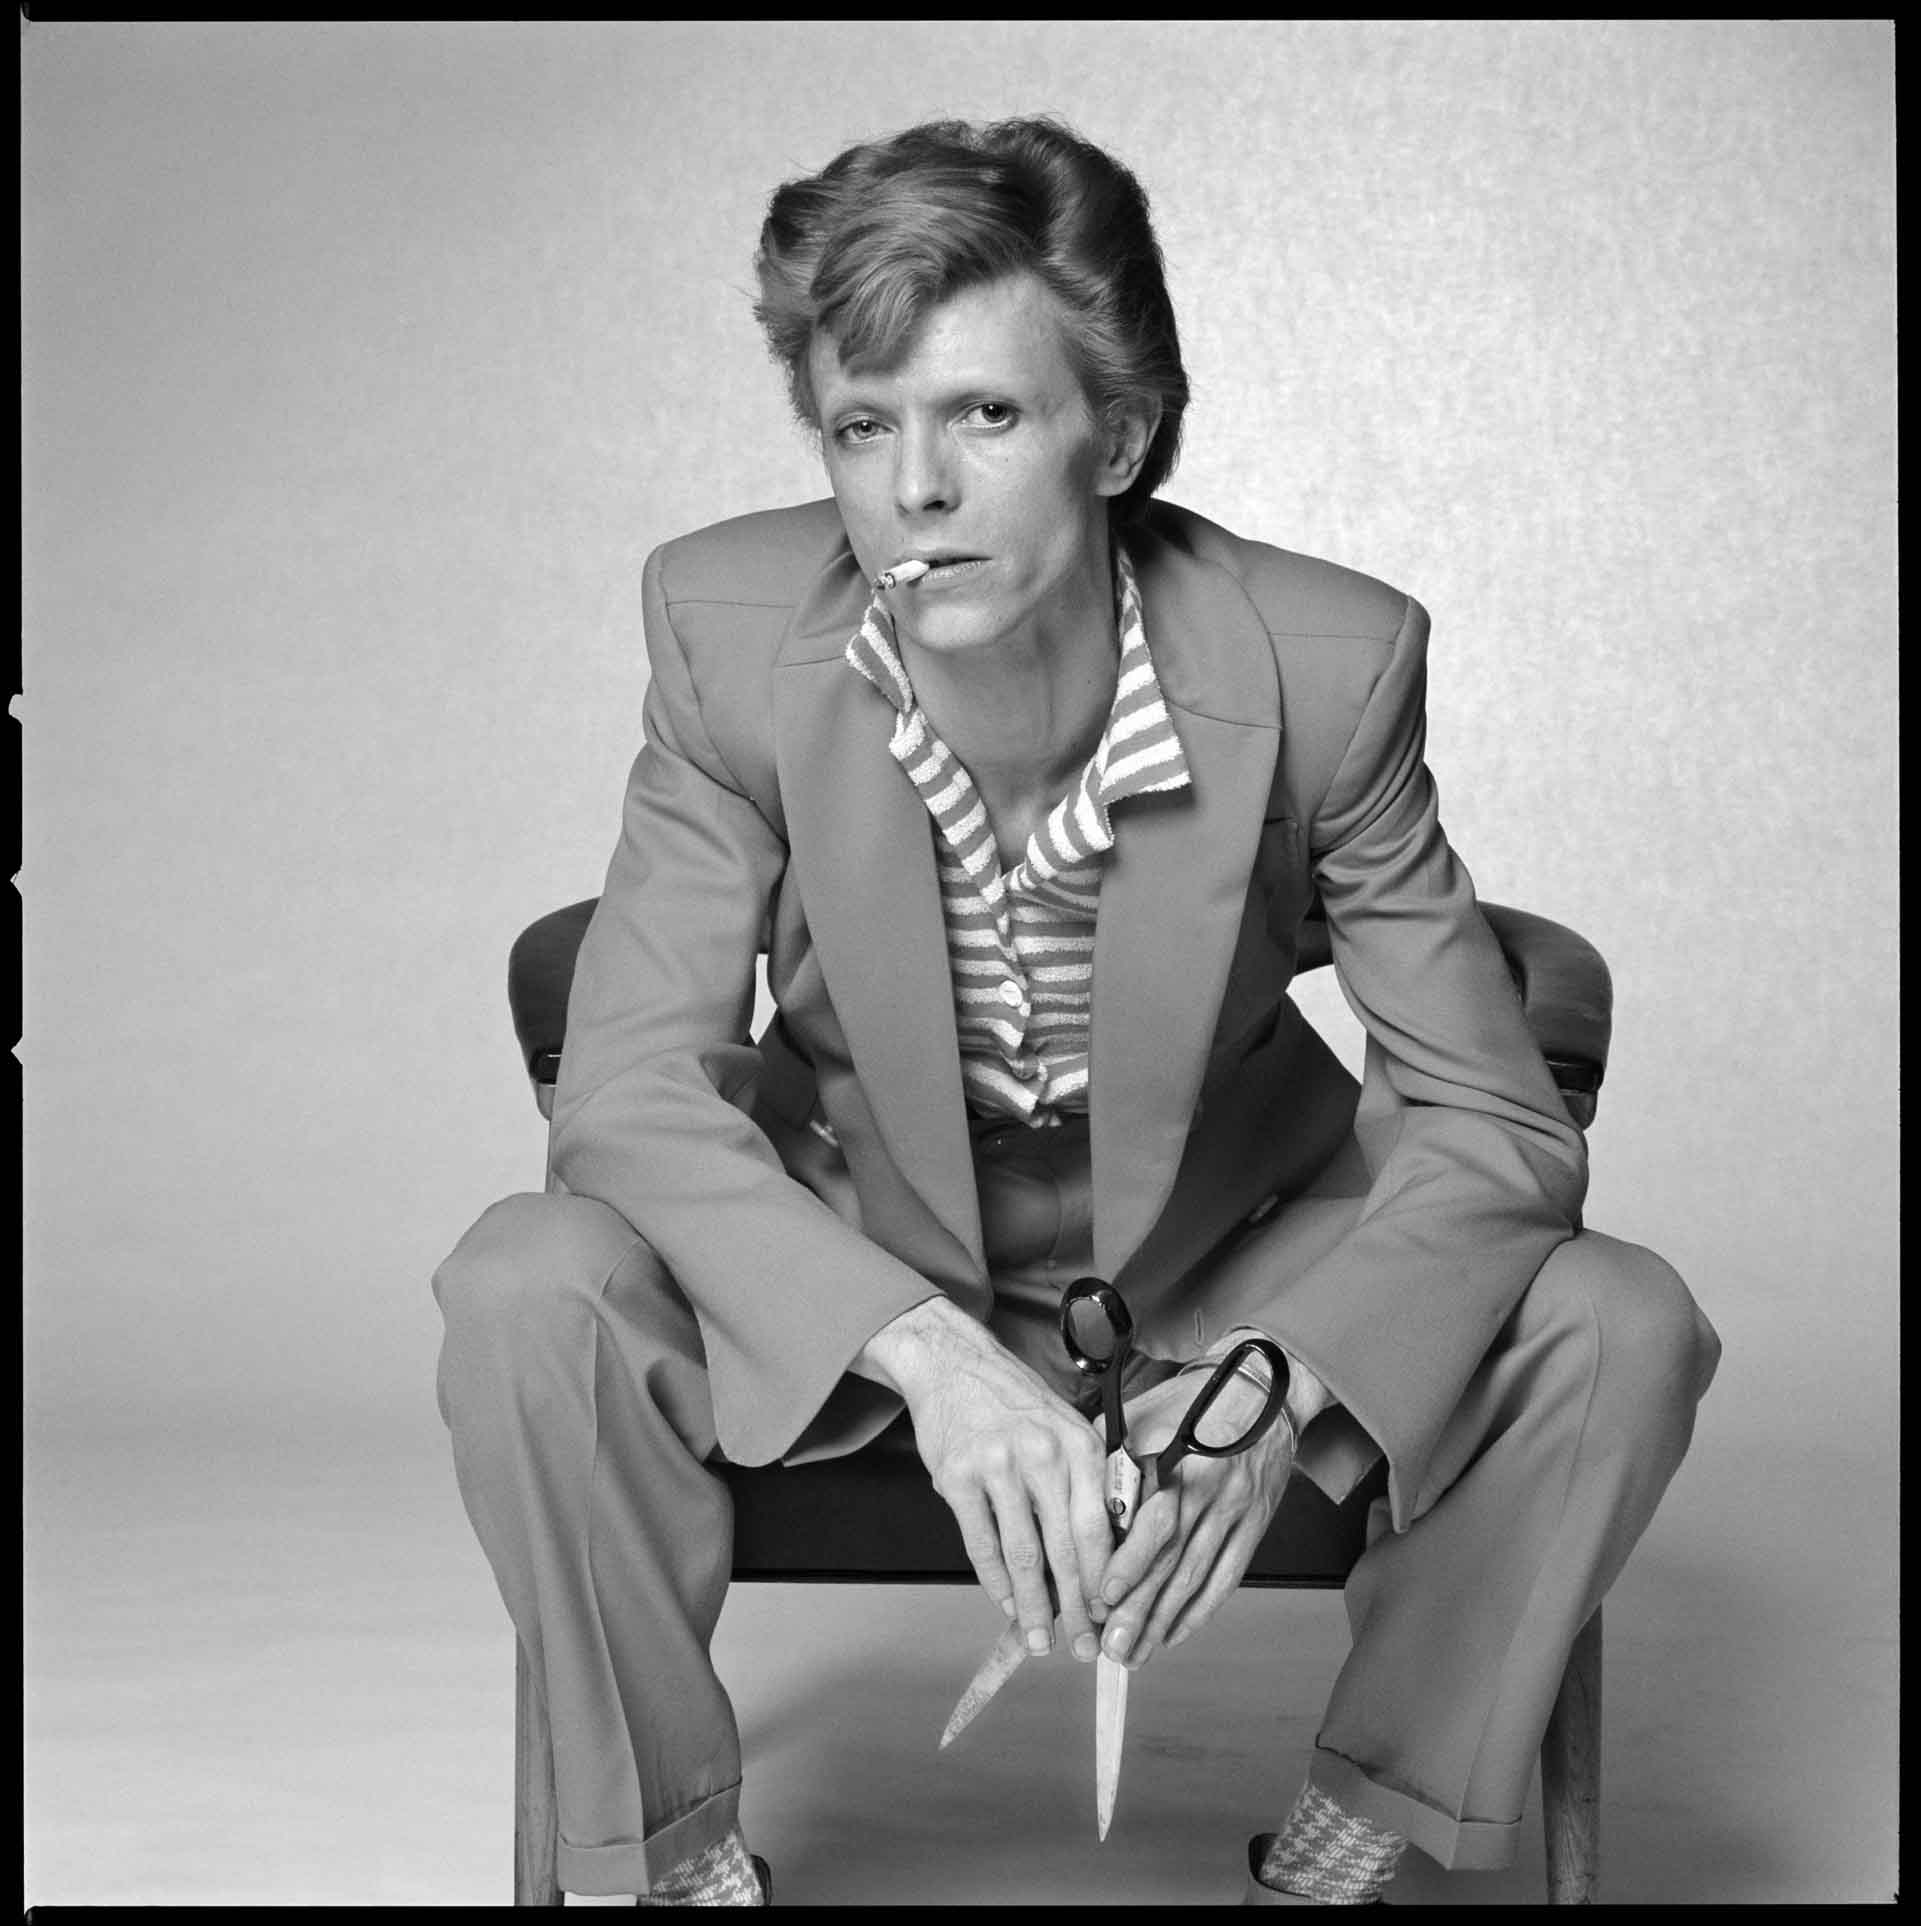 Bowie Scissors BW © Terry O'Neill